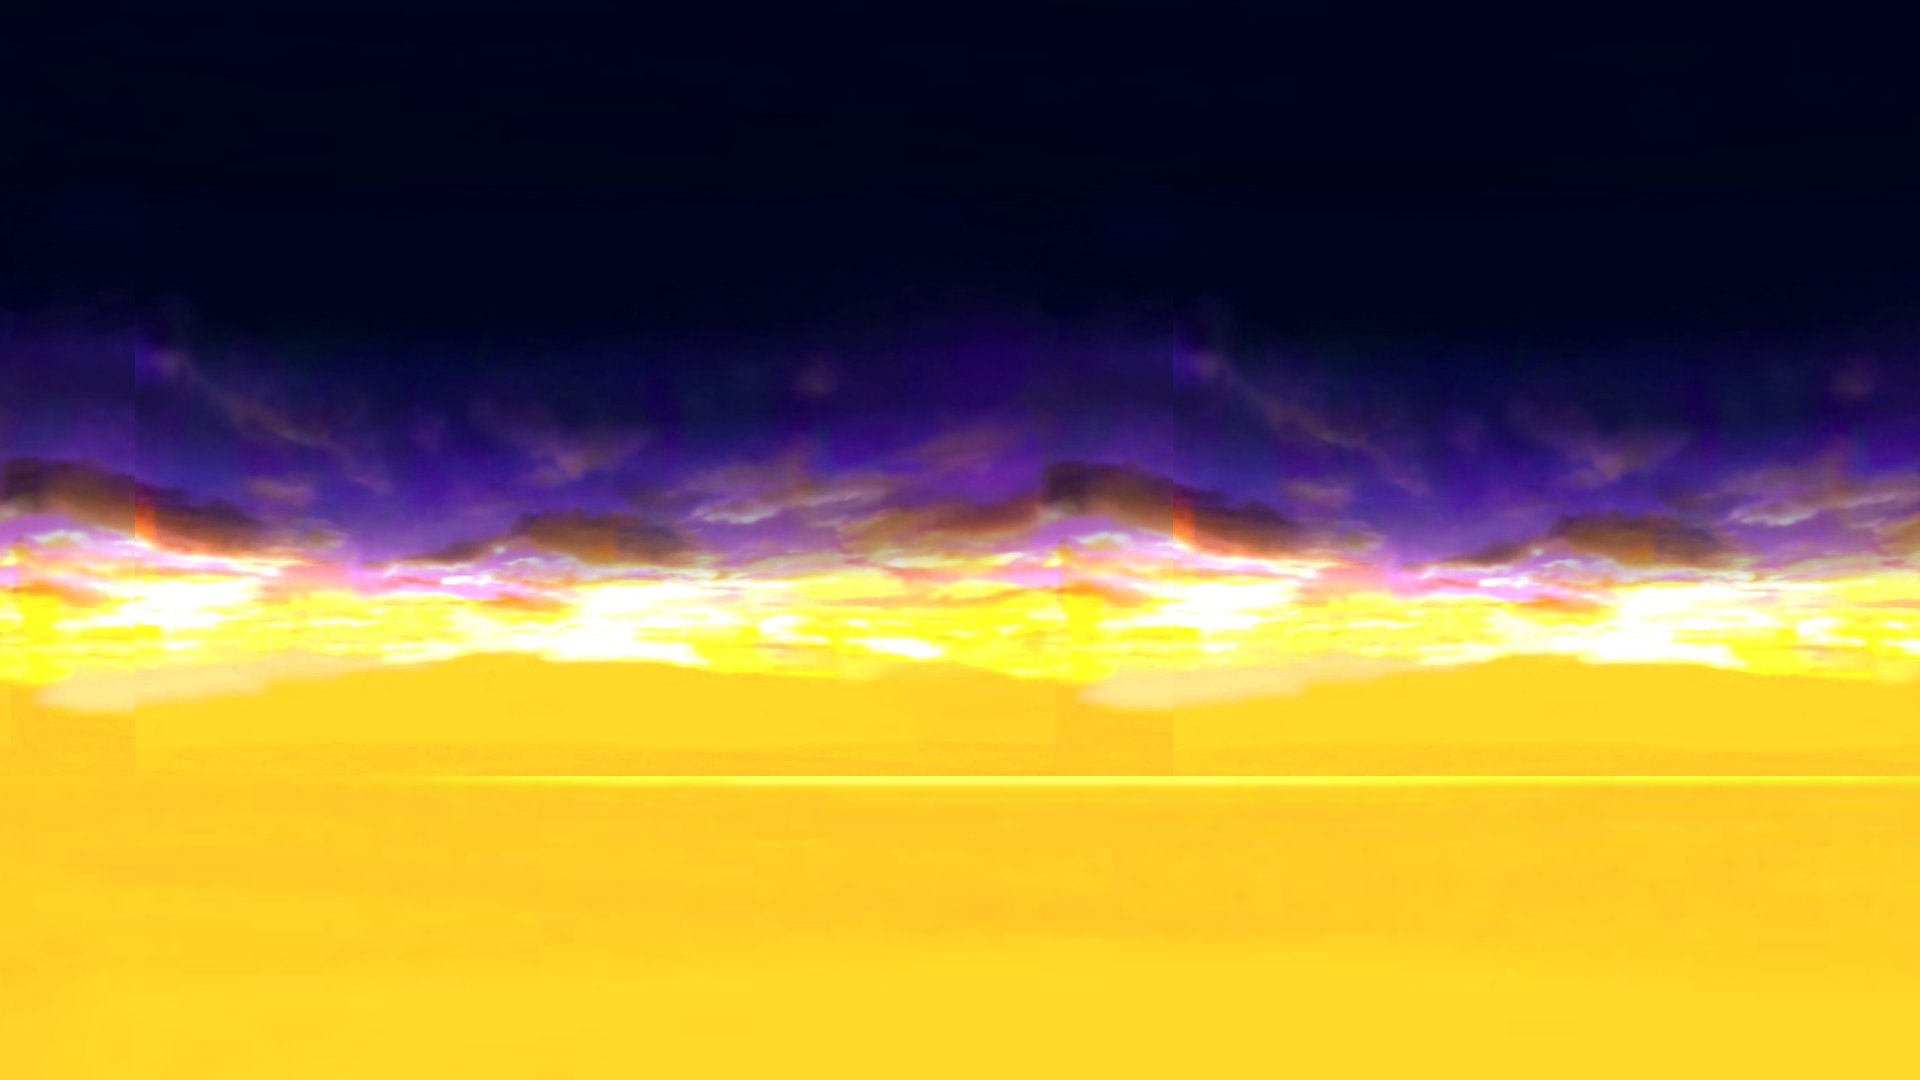 Với nền Sky Background của 20th century fox 1994, bạn sẽ được ngắm nhìn một phong cảnh tuyệt đẹp như có thật, khiến bạn cảm thấy như đang ngắm nhìn tầm nhìn xa xăm của Vũ trụ. Cùng thả mình trong không gian đồng thời điểm nhìn chuyển động đẹp lung linh này.